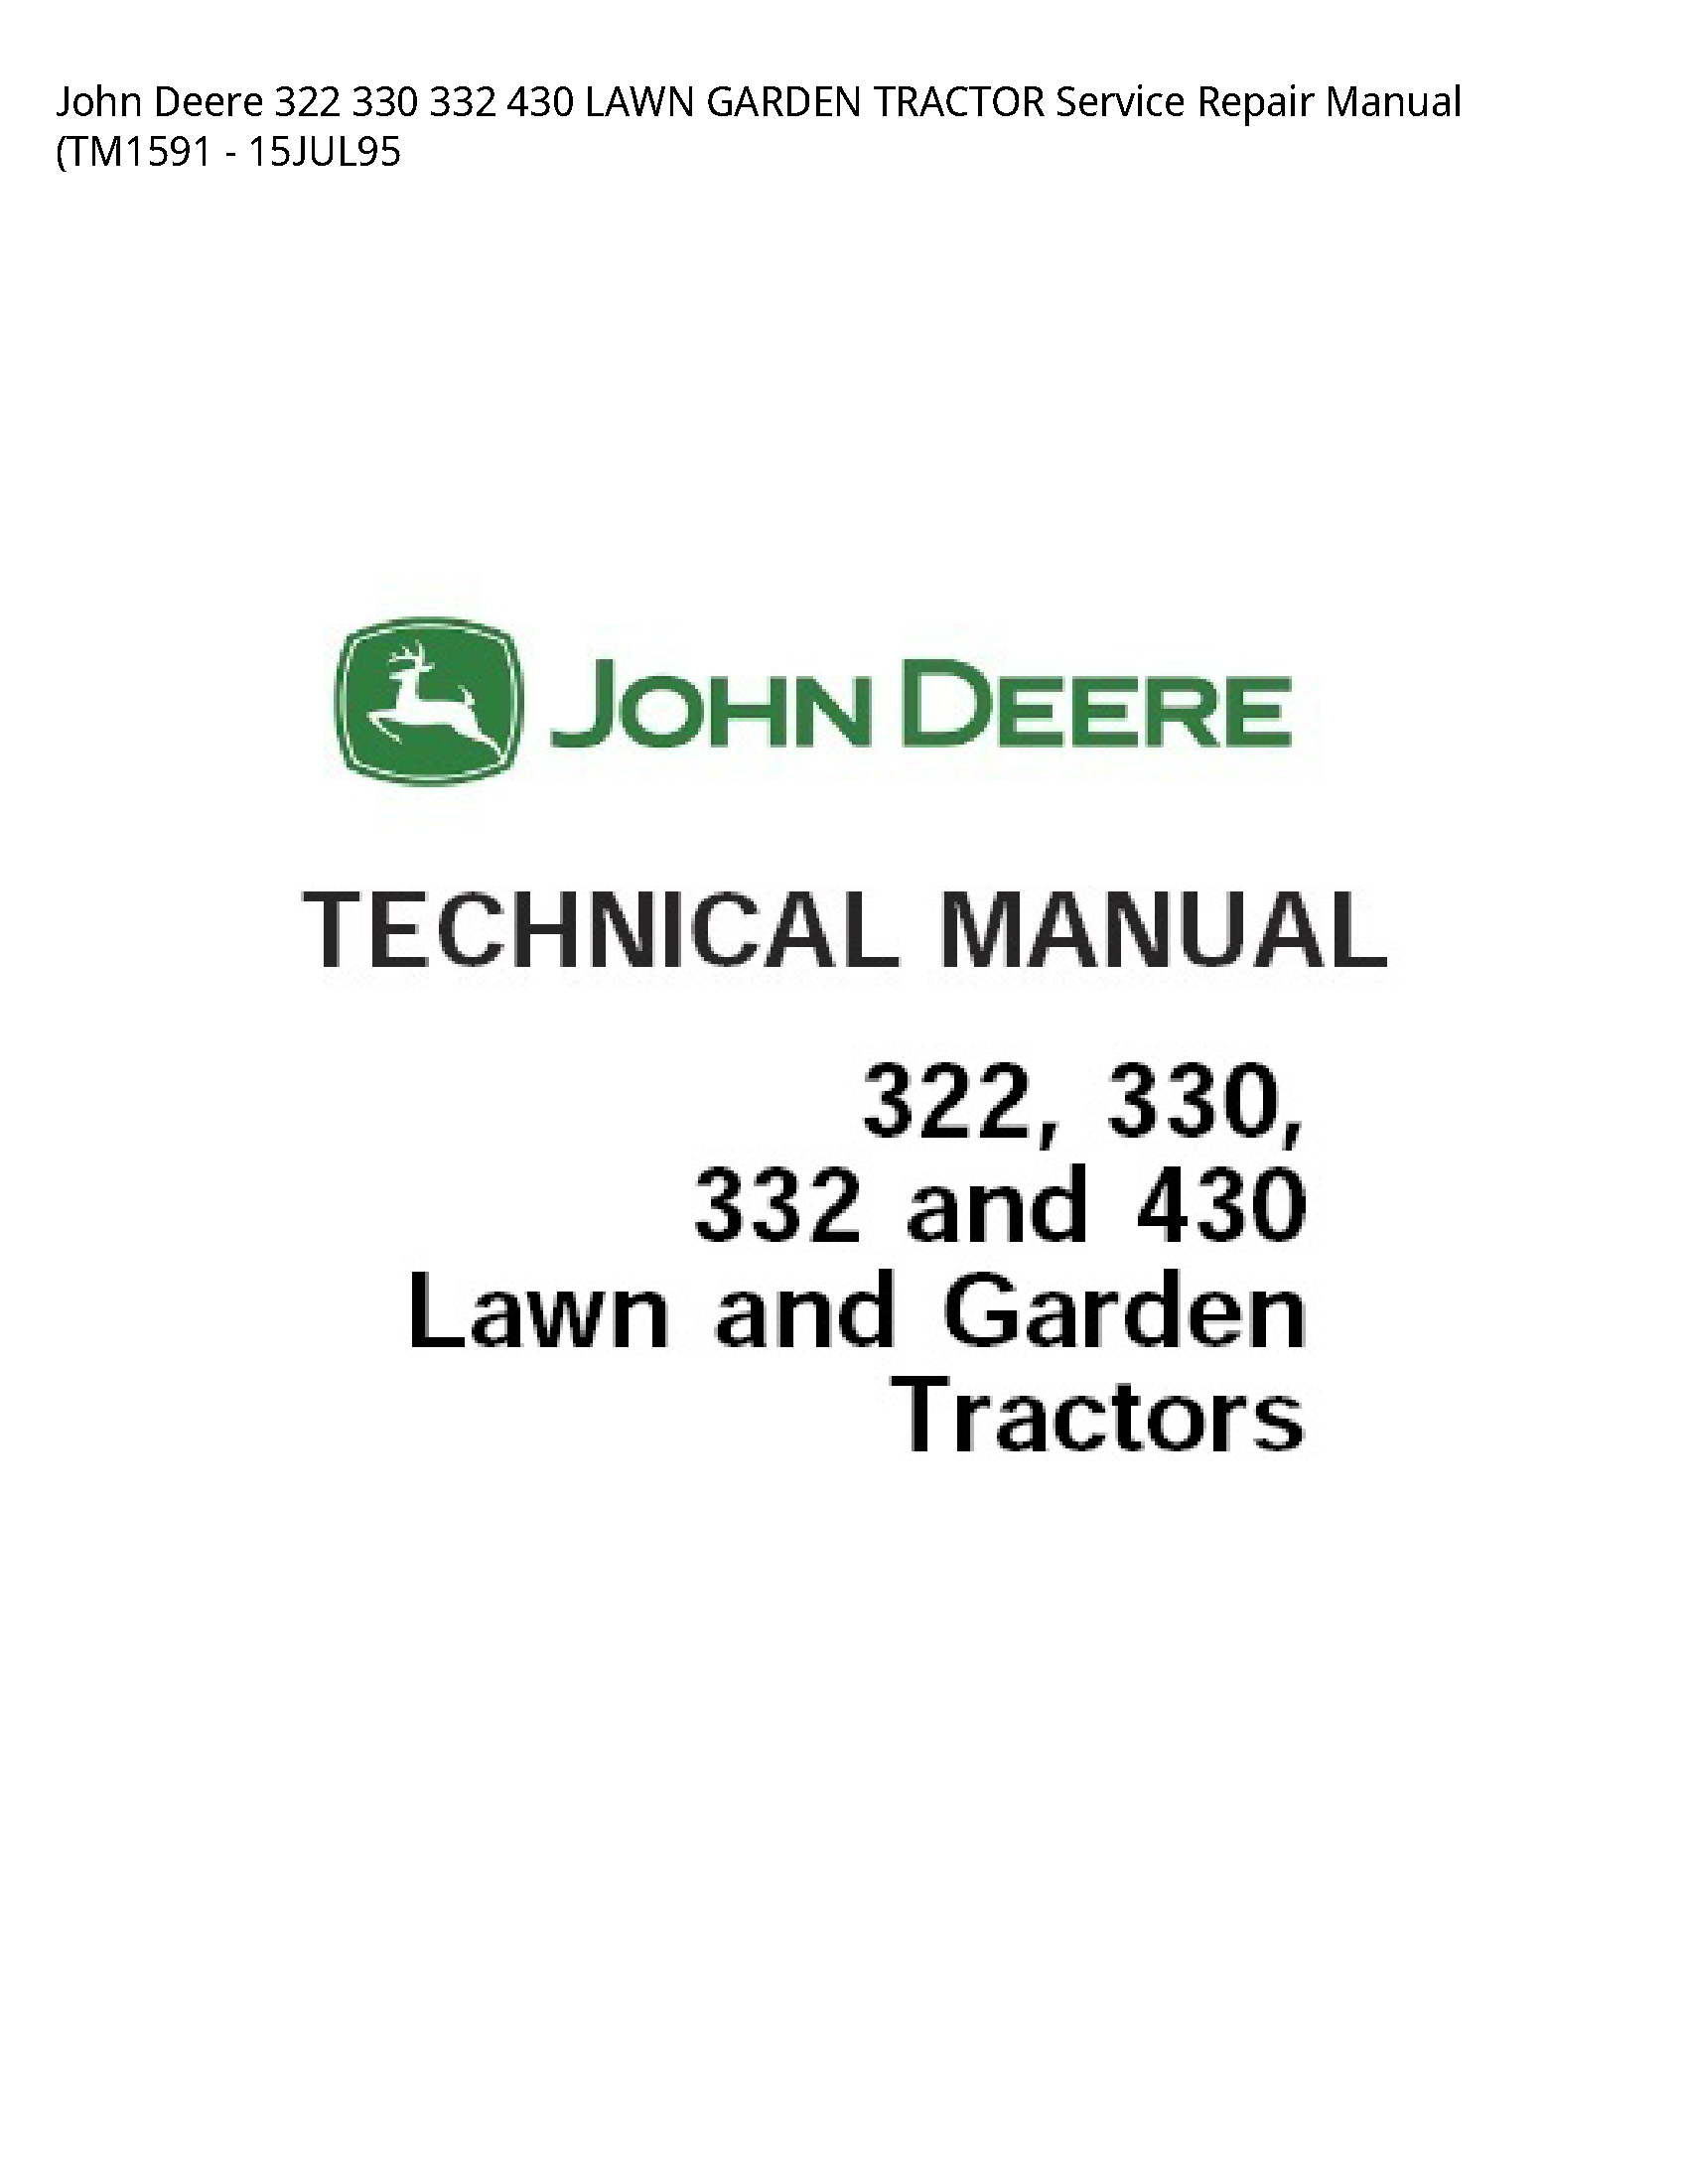 John Deere 322 330 332 430 LAWN GARDEN TRACTOR Service Repair Manual (TM1591 - 15JUL95